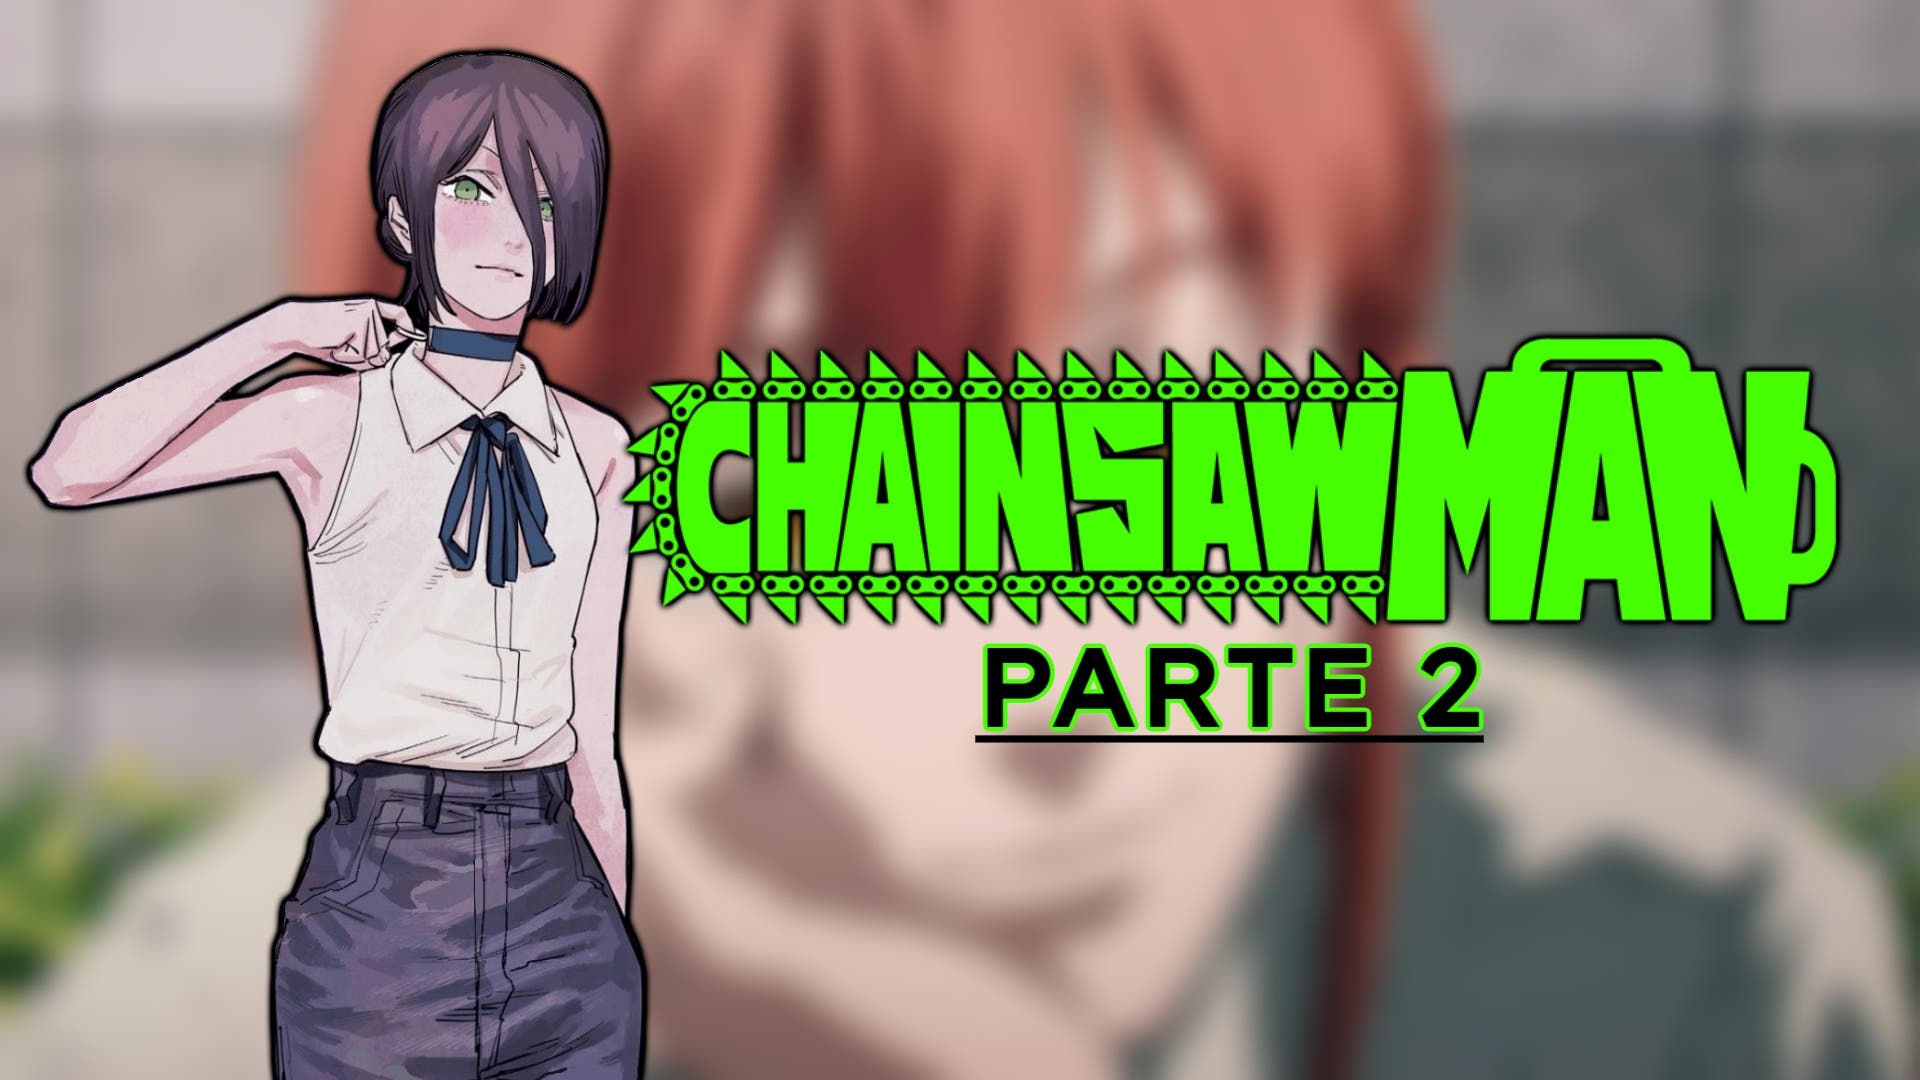 Cuántos capítulos serán en la temporada de Chainsaw Man?